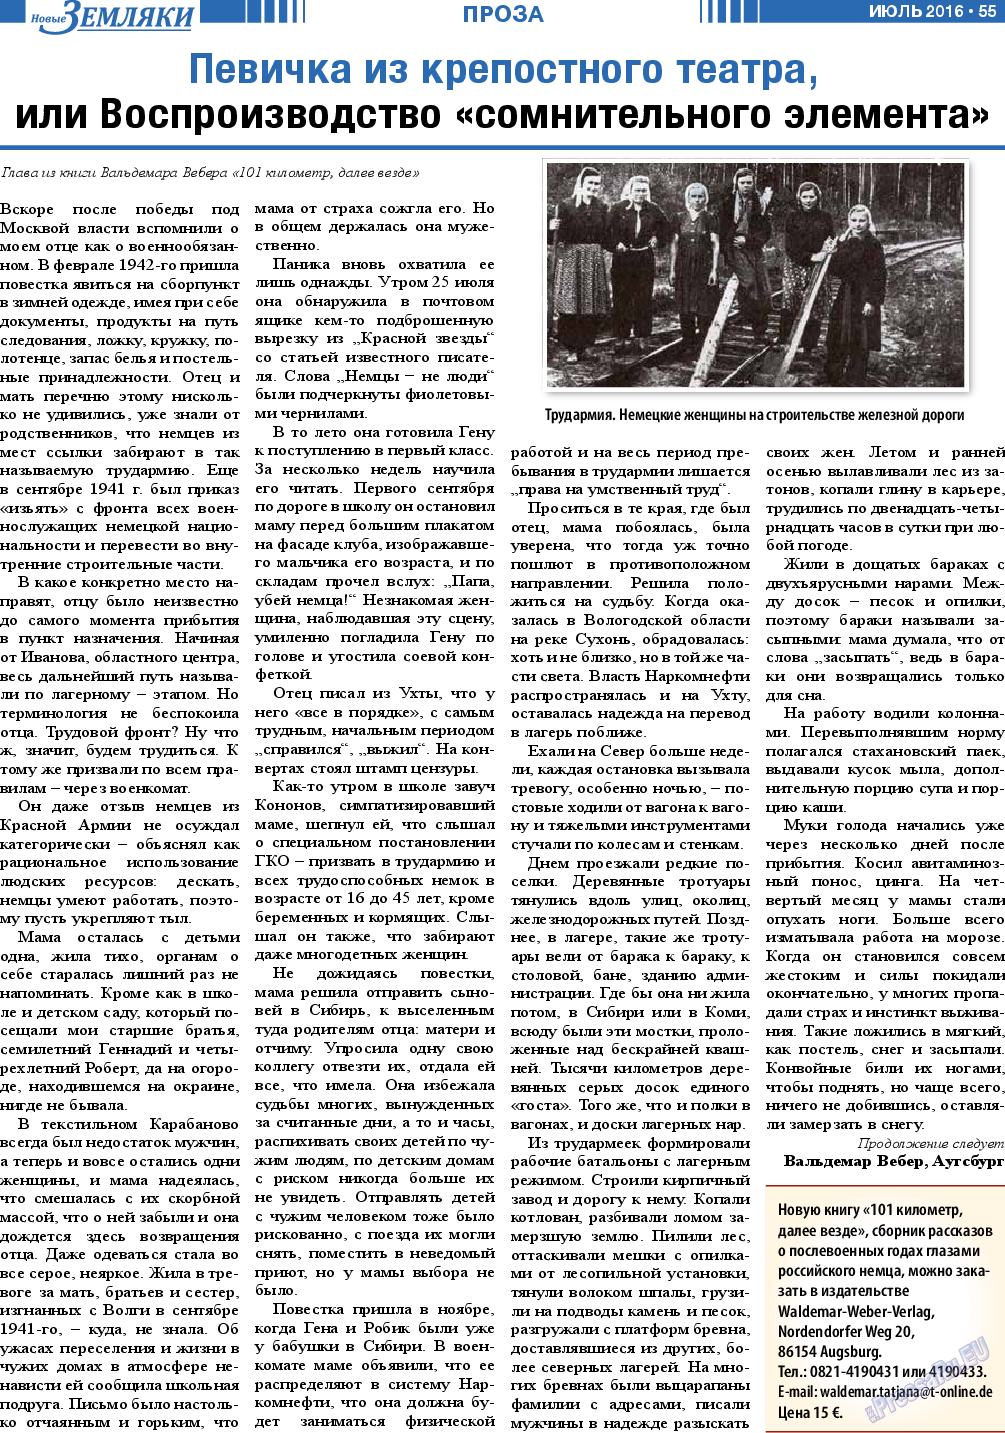 Новые Земляки, газета. 2016 №7 стр.55